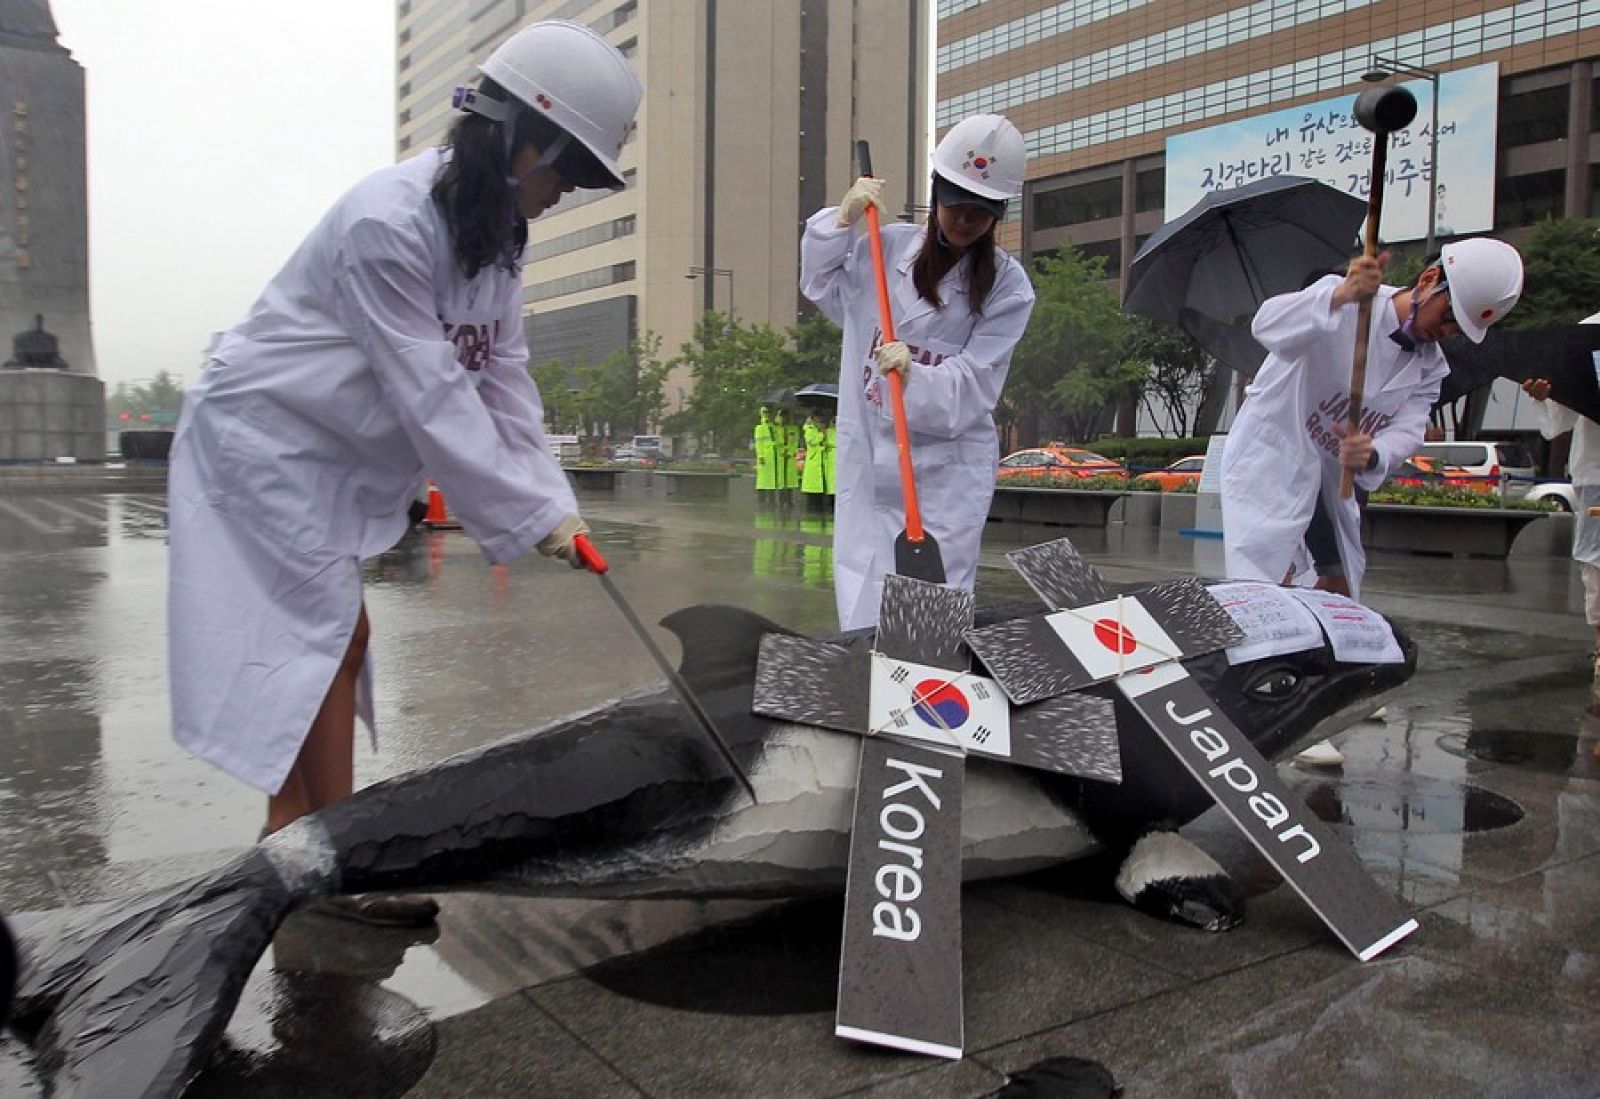 Las protestas han paralizado los planes de Corea del Sur de reanuda la caza científica de ballenas